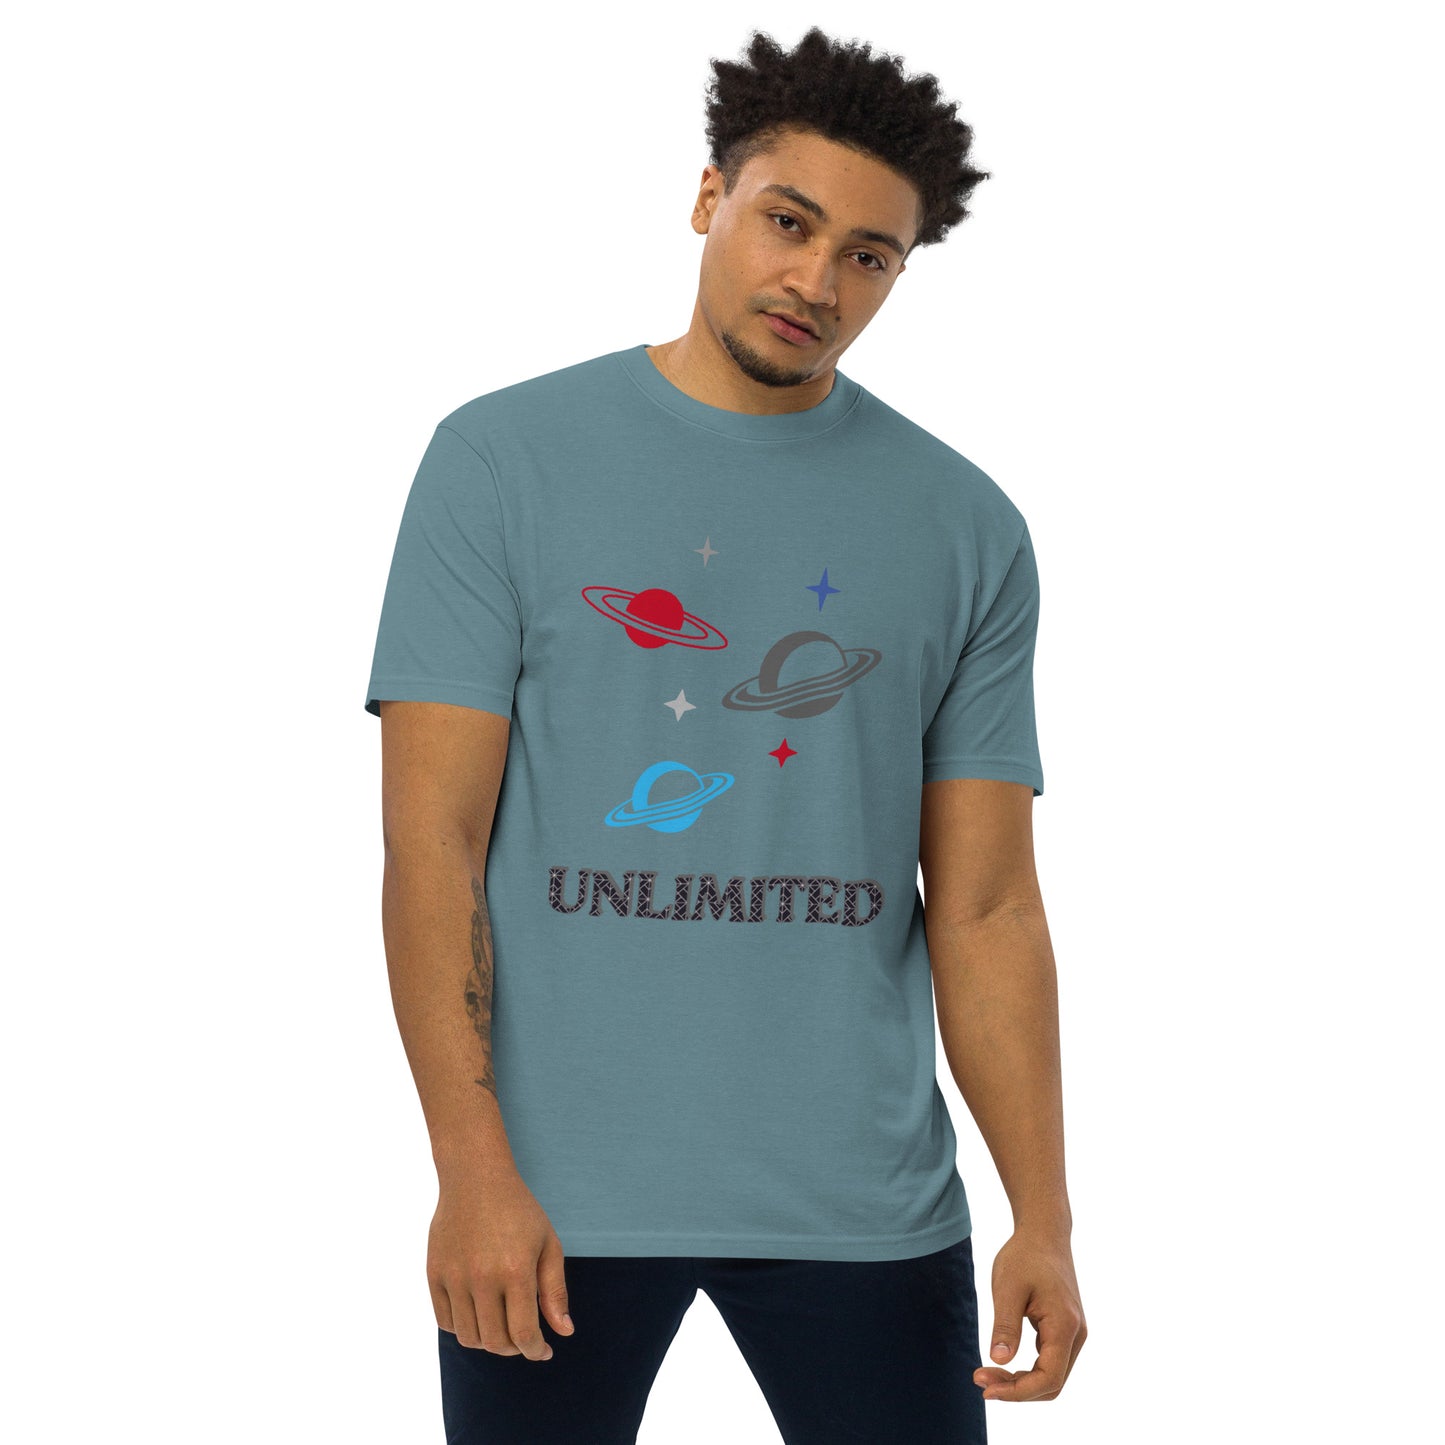 Unlimited - Men’s Premium Tee